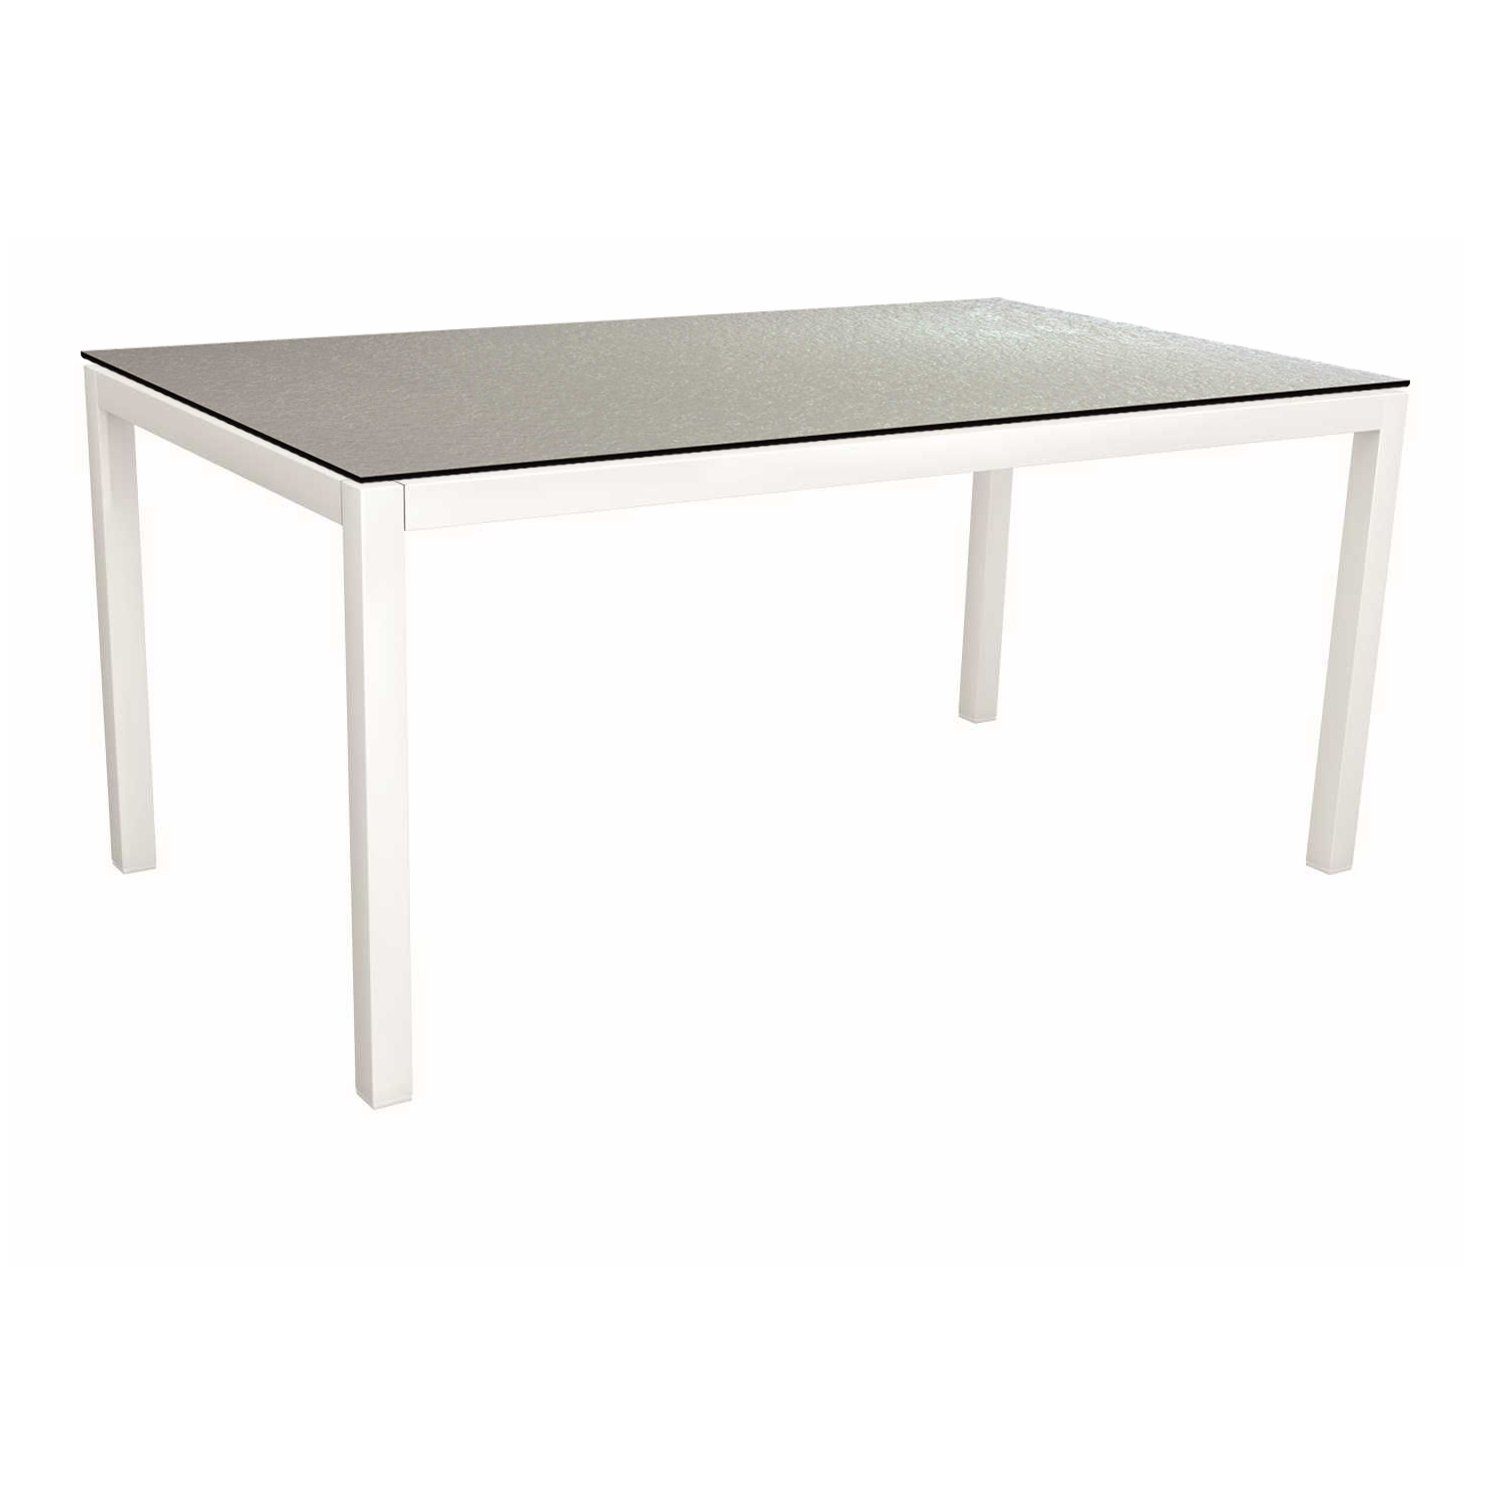 Stern Tischsystem, Gestell Aluminium weiß, Tischplatte HPL Uni Grau, Größe: 160x90 cm